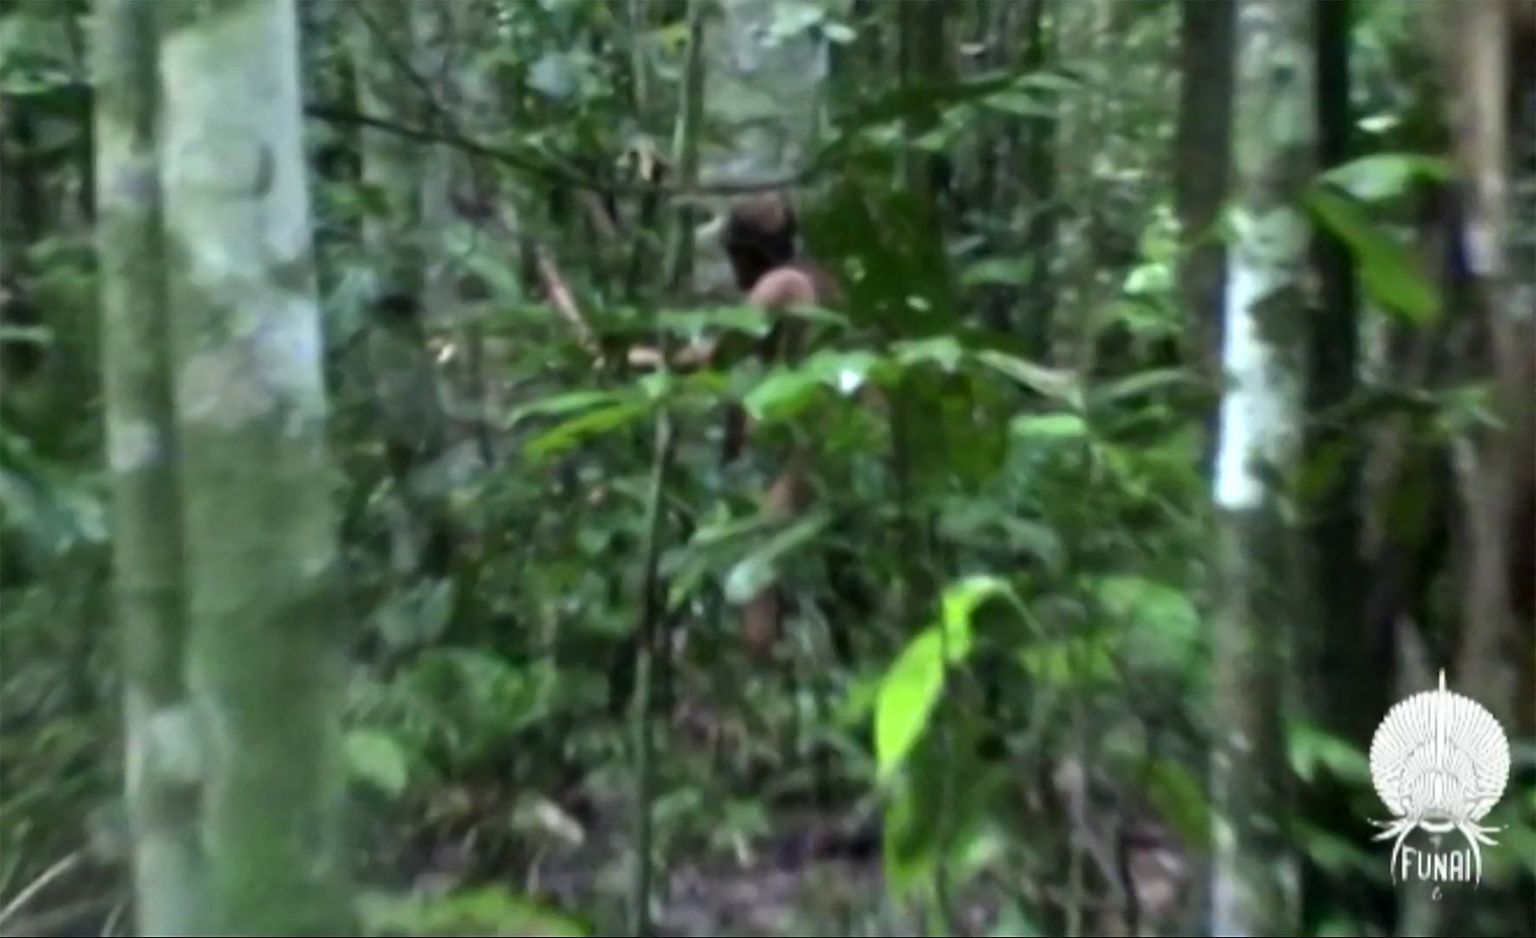 Brasiilias Amazonases elanud hõimu viimane liige jäi 2011 Brasiilia rahvusliku indiaanlaste fondi  /(FUNAI) esindajate videole. Meest jälgiti alates 1996. aastast